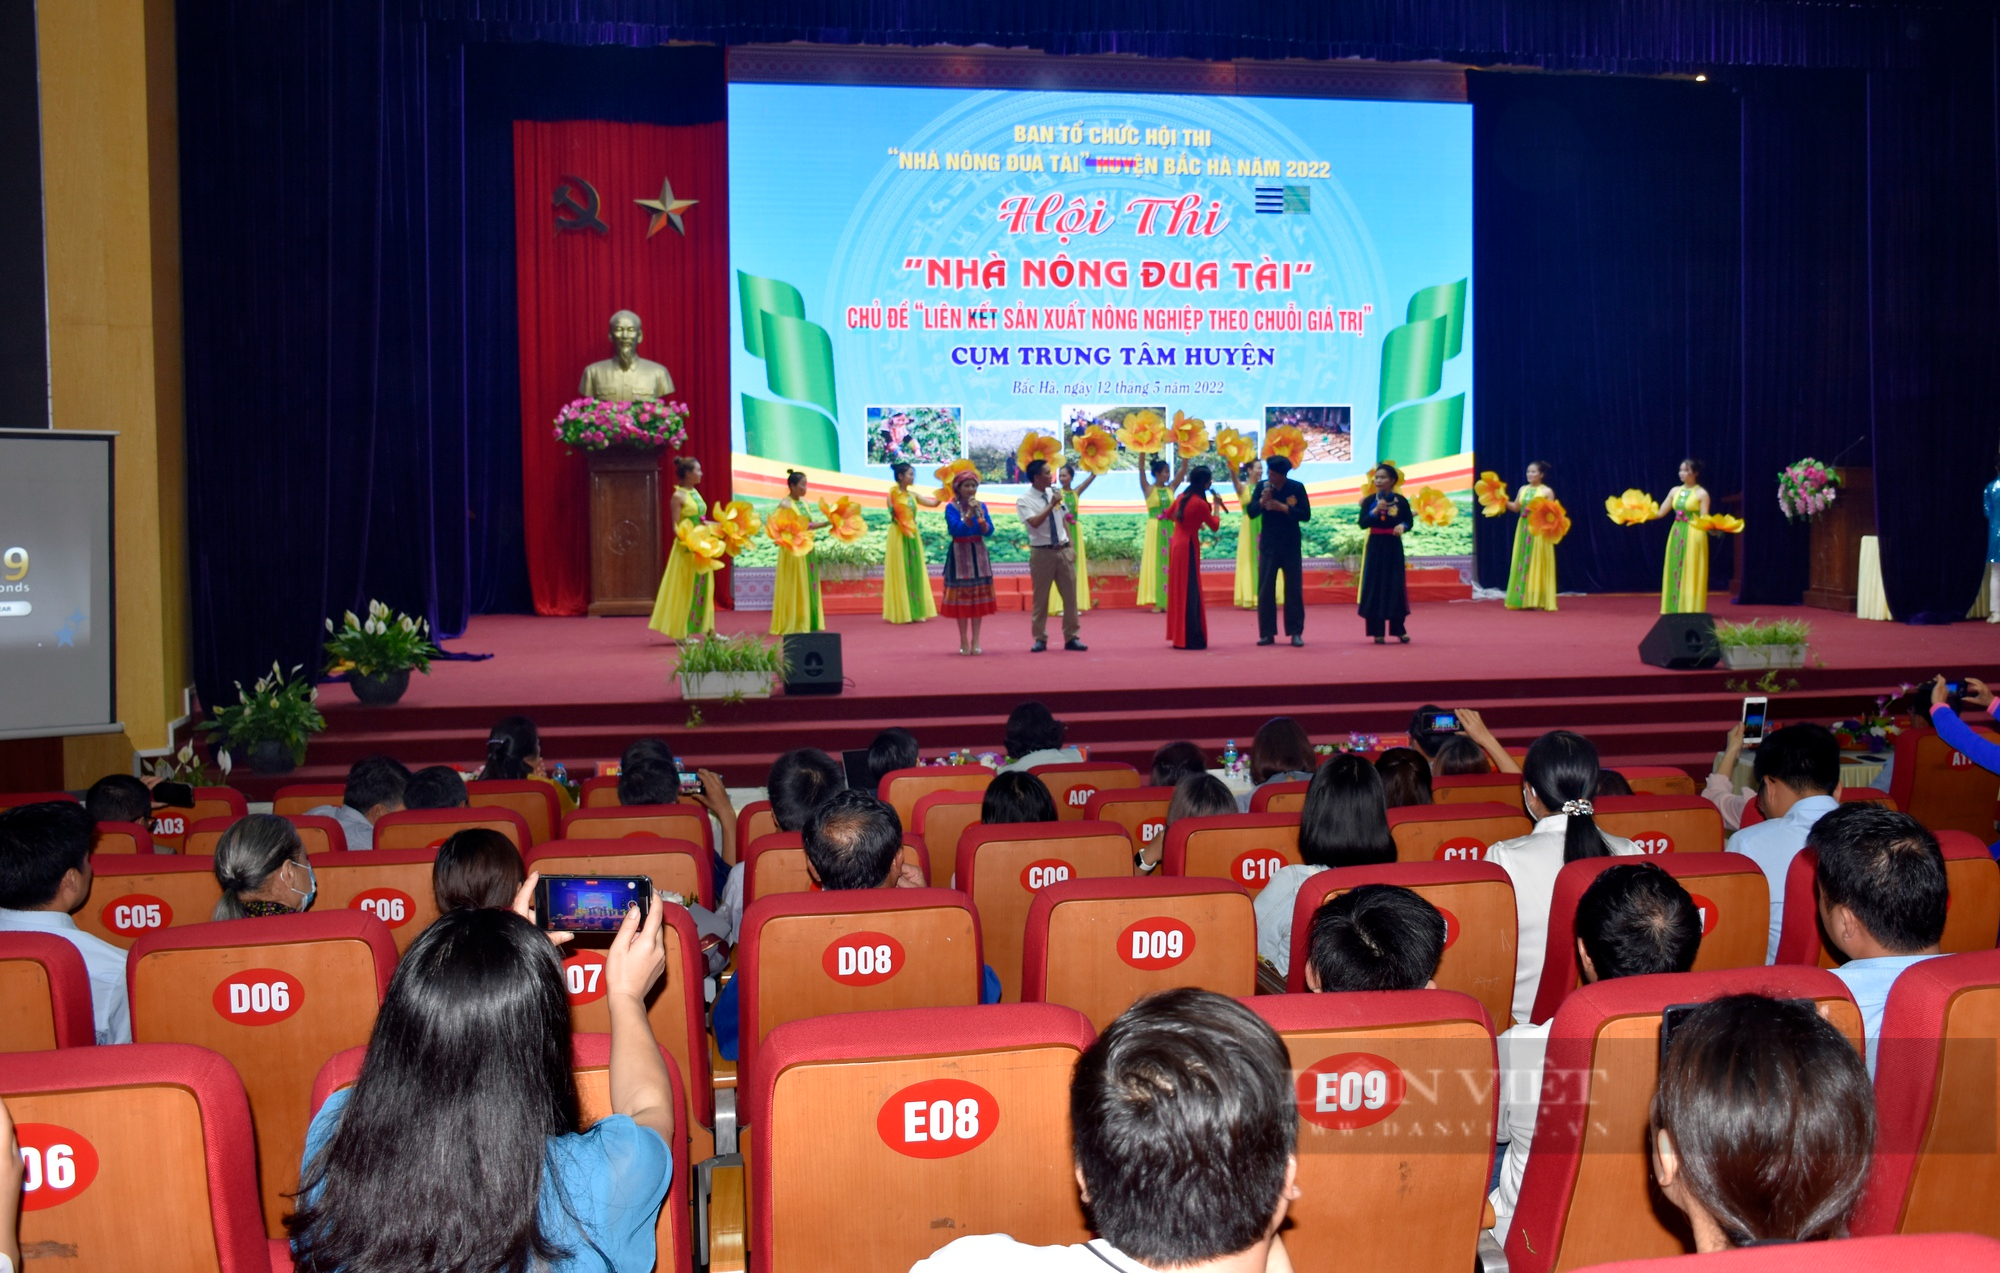 Lào Cai: Hội thi Nhà nông đua tài cấp xã huyện Bắc Hà năm 2022 - Ảnh 1.